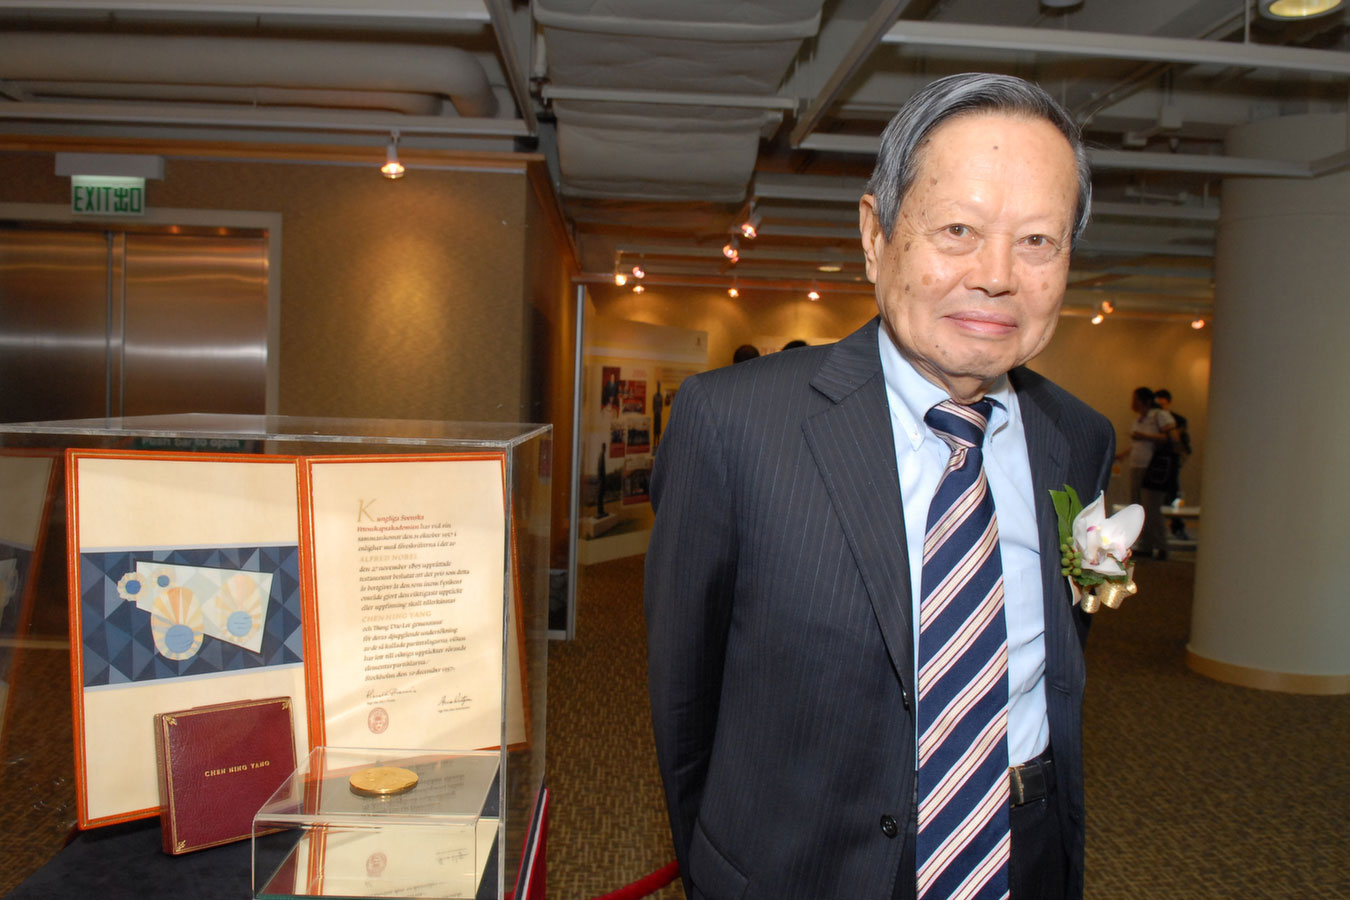 中文大學博文講座教授楊振寧教授為首位華人諾貝爾獎得主。楊教授對二十世紀中葉以來的物理學發展，尤其是粒子和統計學物理的領域，產生了深遠的影響。